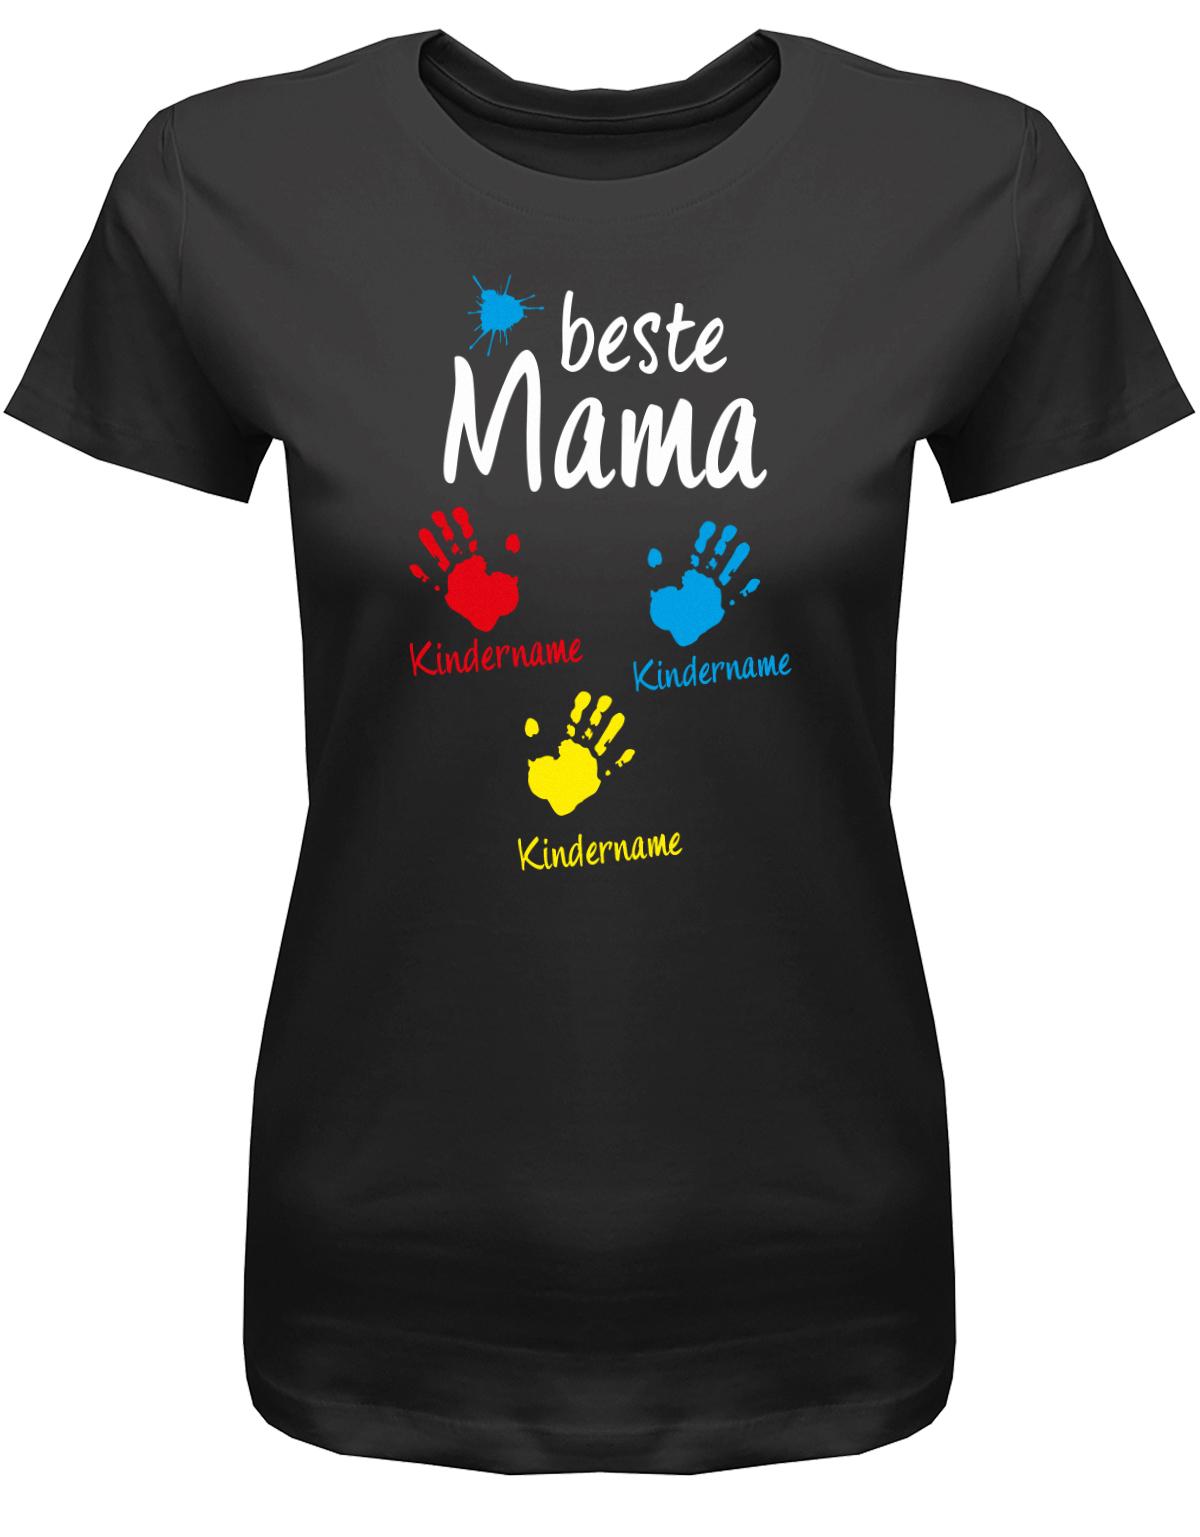 Beste-Mama-3-Kinder-Wusnchnamen-Damen-Shirt-schwarz